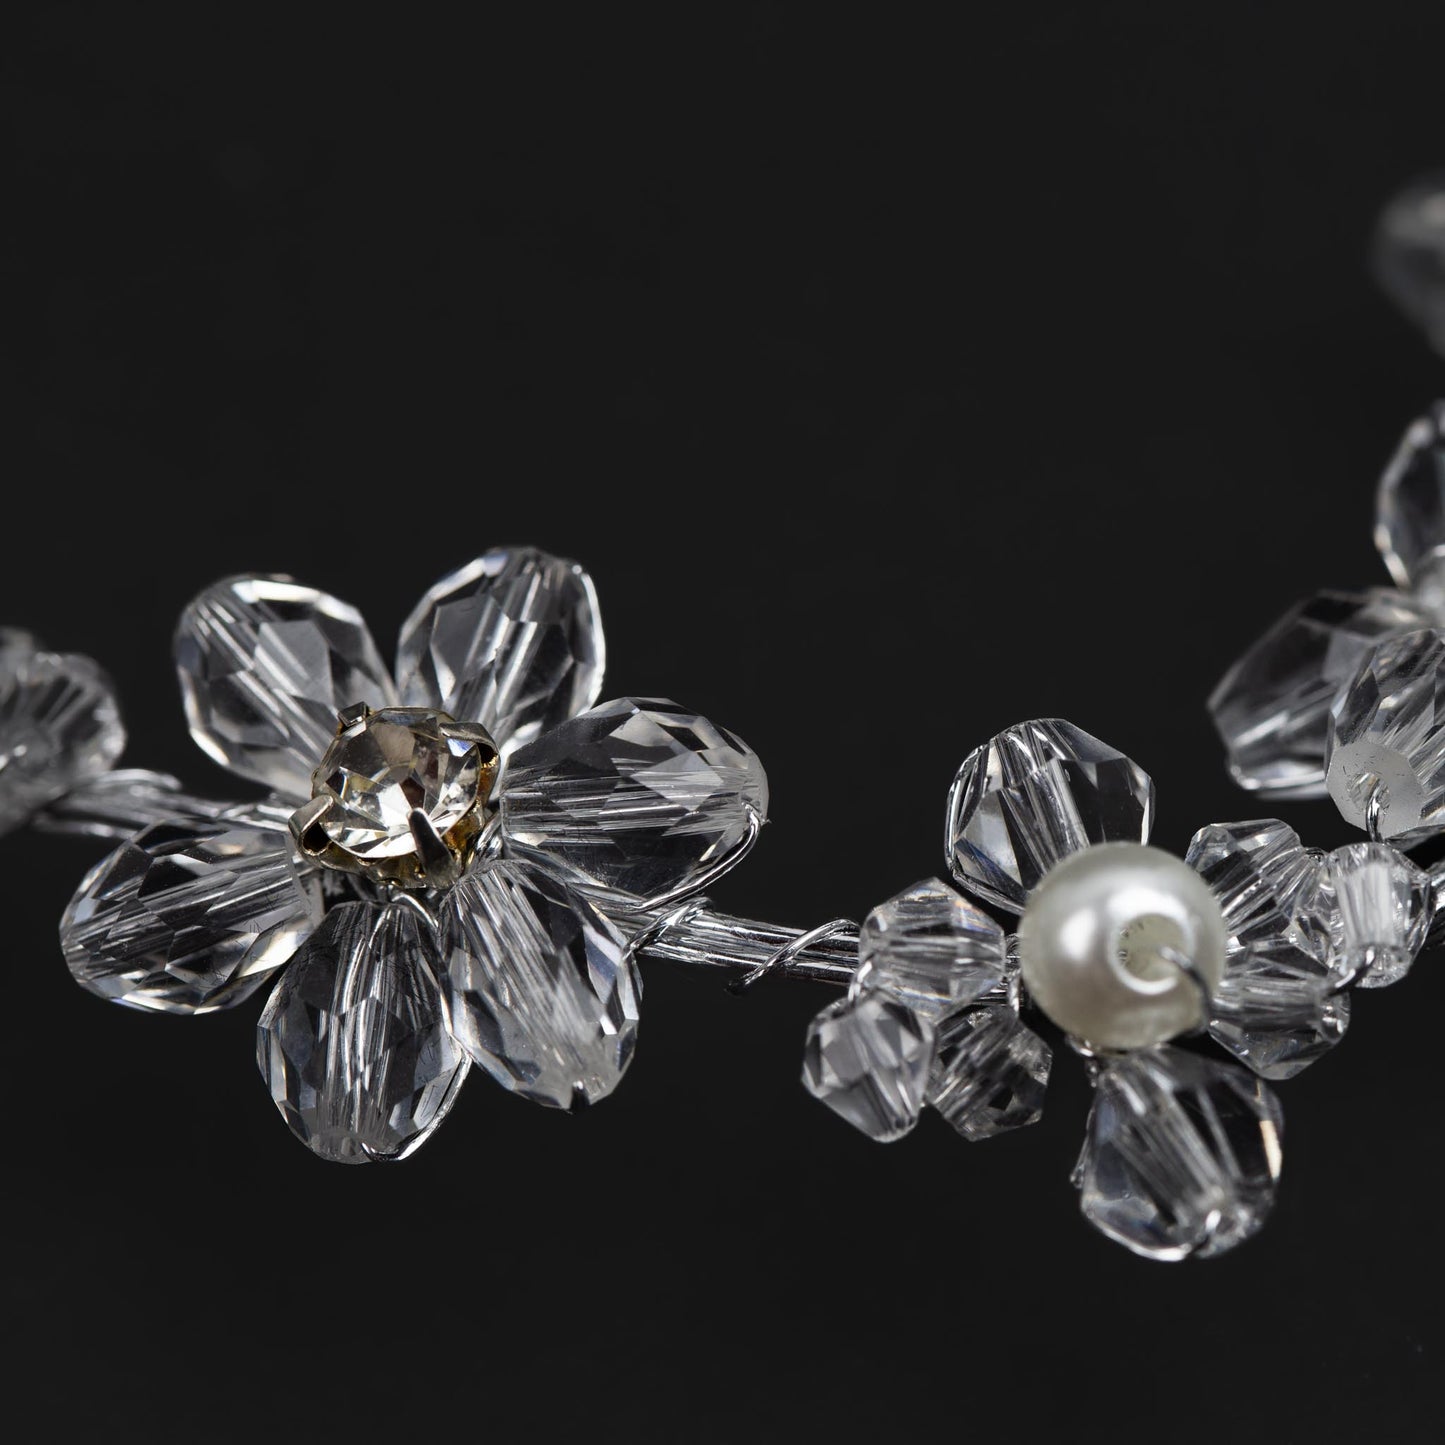 Diademă elegantă maleabilă cu pietre, perle, flori - Argintiu Clasic